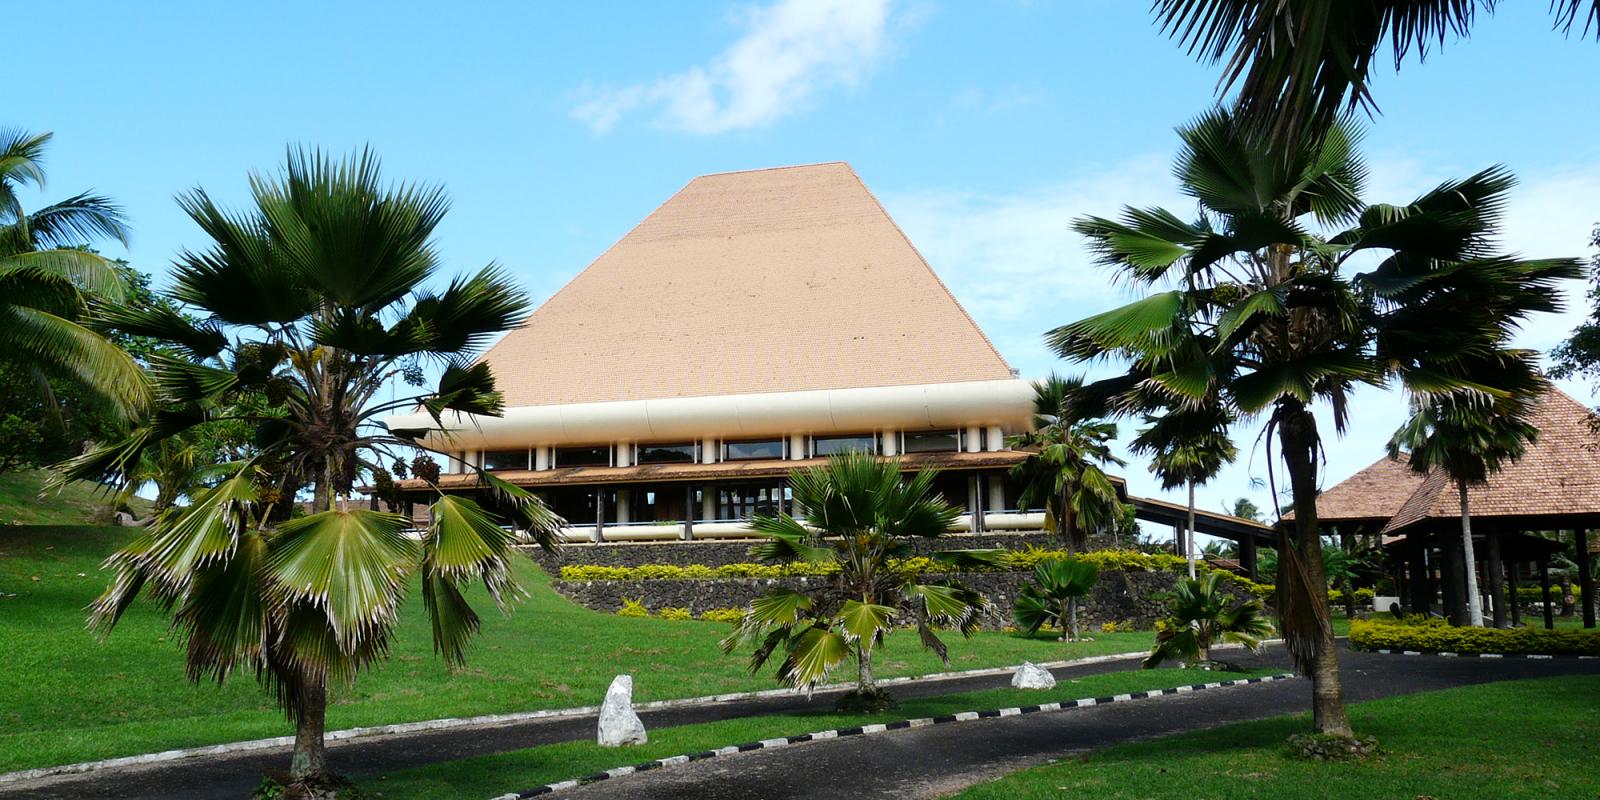 De parlementsgebouwen van hoofdstad Suva waar de regering van Fiji is gevestigd